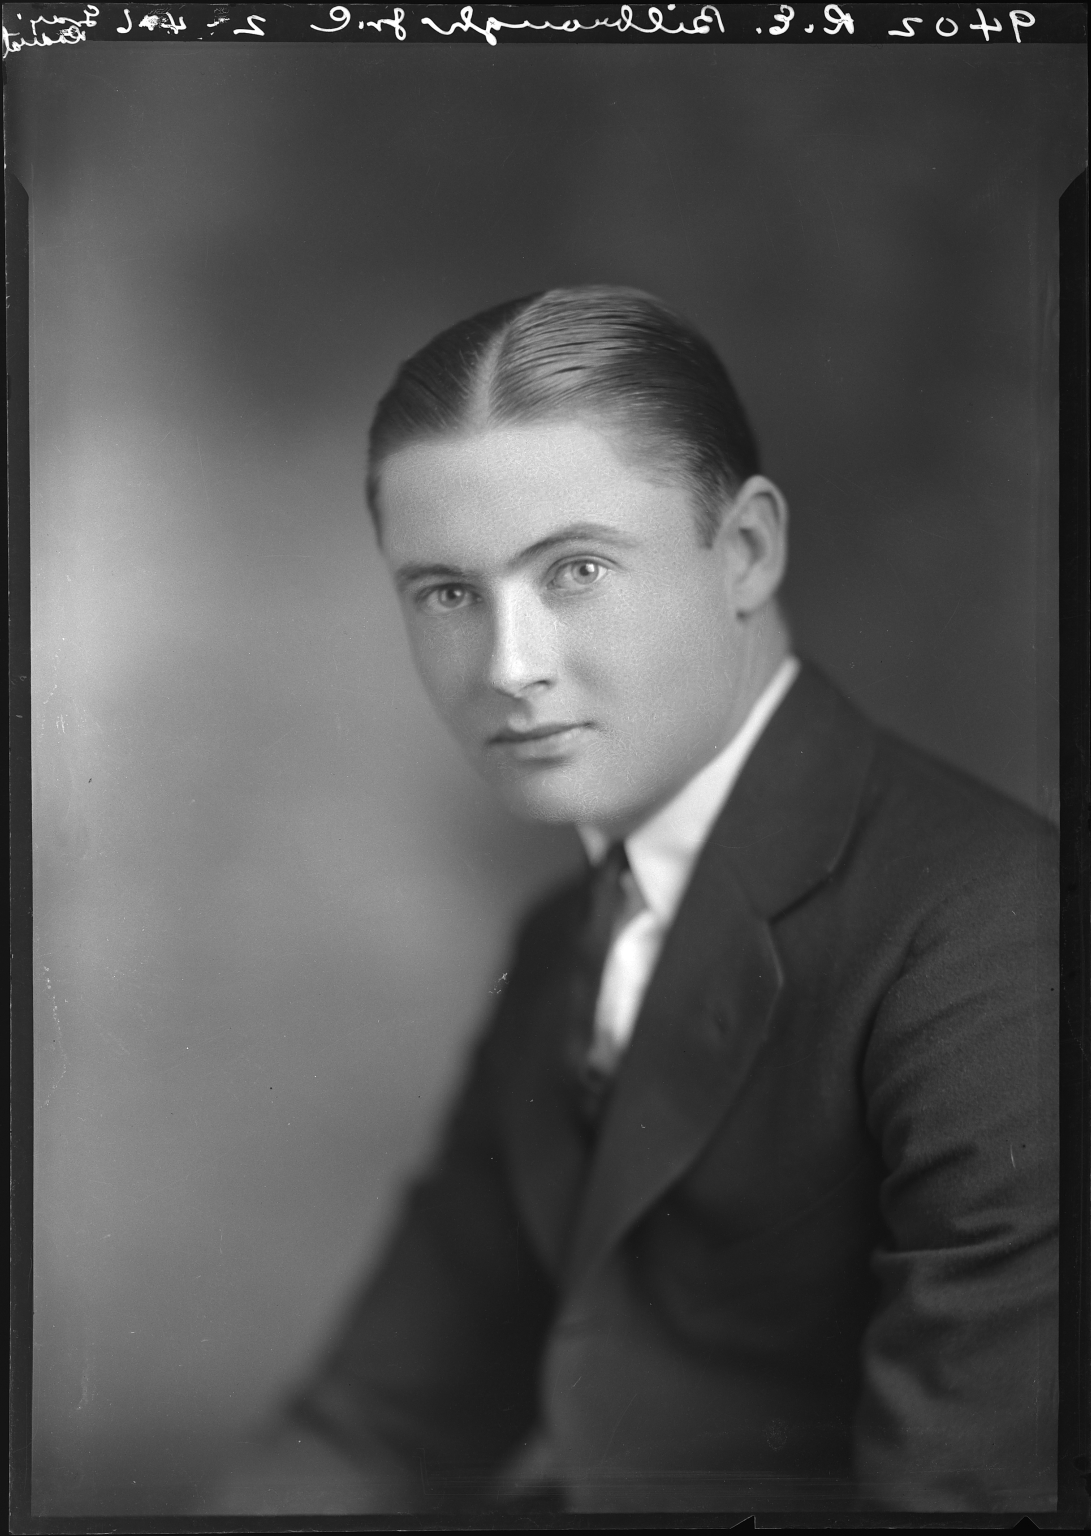 Portraits of R. E. Bilbrough